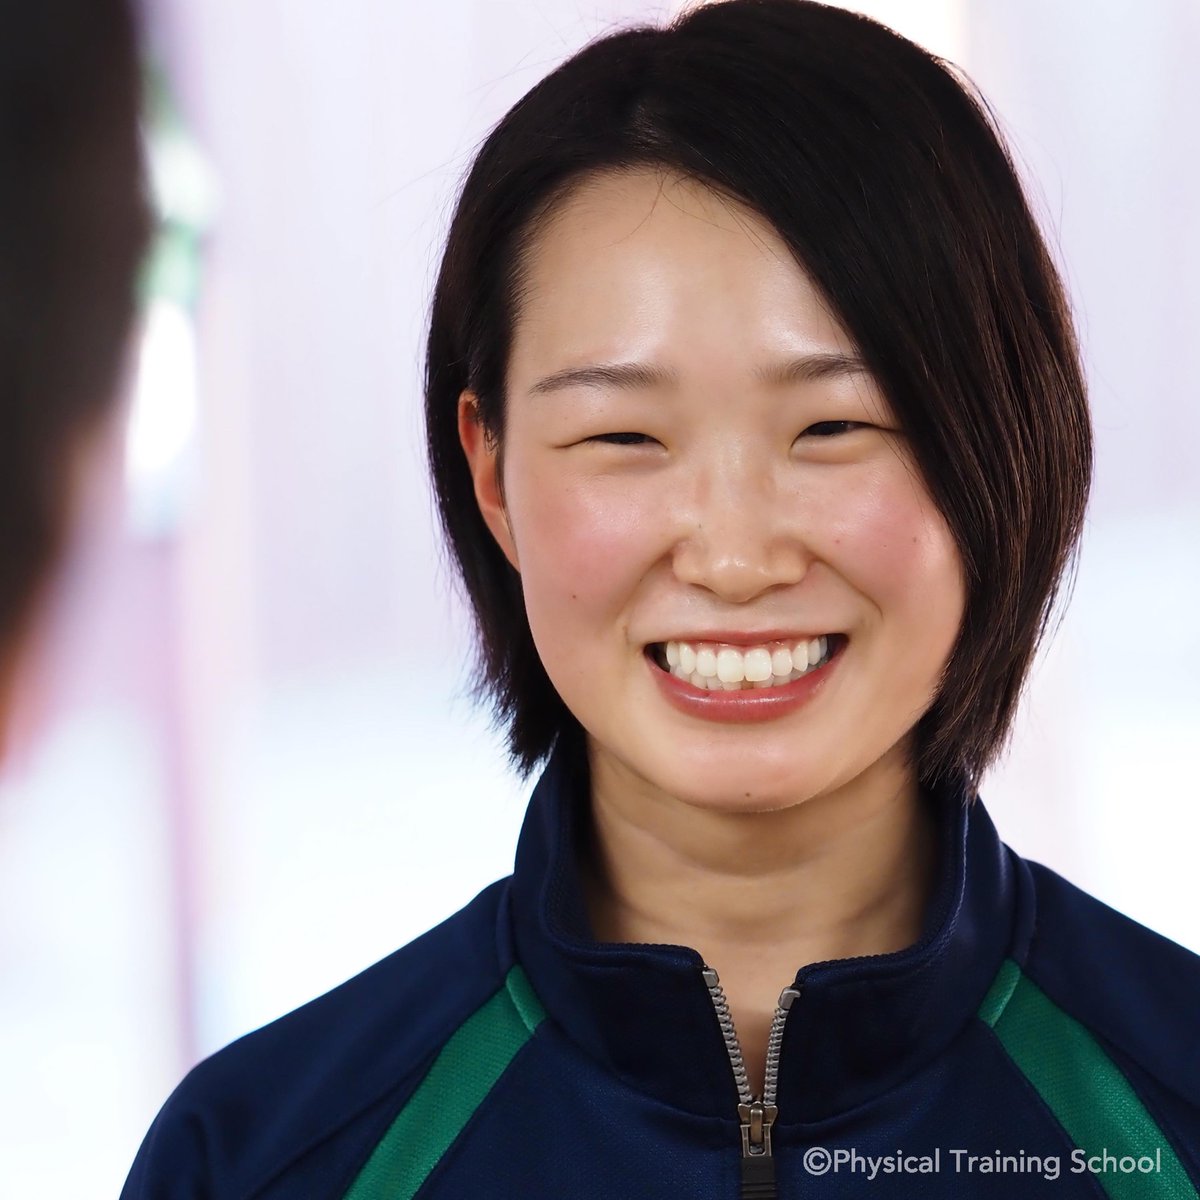 山田聡子が東京オリンピック 射撃日本代表に 競技日程は 今の年齢は 滋賀県出身 誕生日は2月